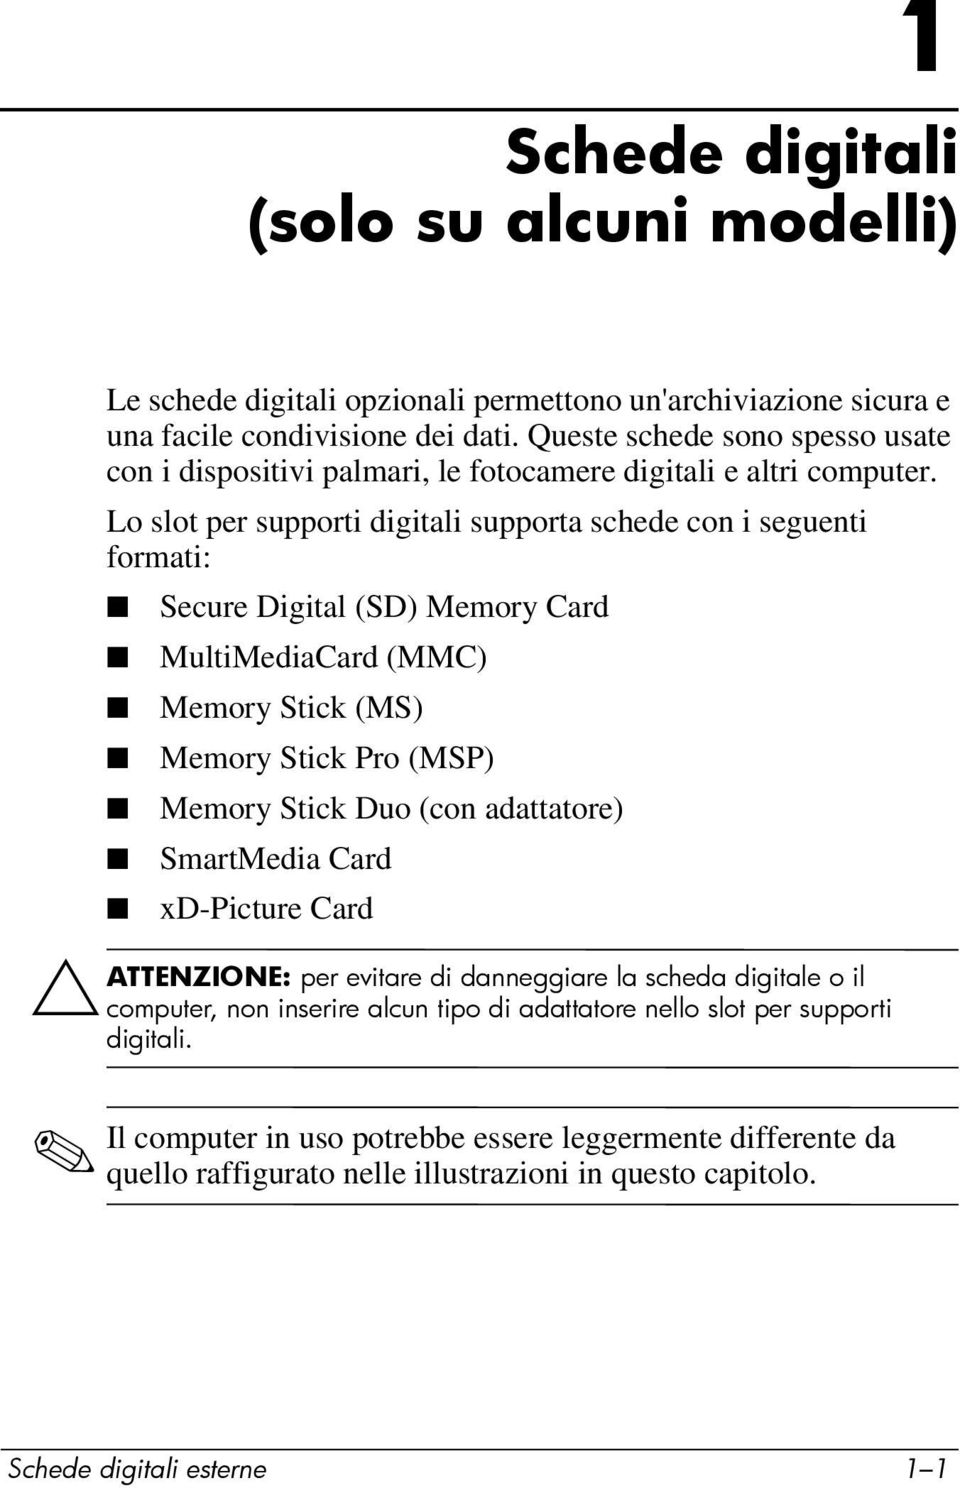 Lo slot per supporti digitali supporta schede con i seguenti formati: Secure Digital (SD) Memory Card MultiMediaCard (MMC) Memory Stick (MS) Memory Stick Pro (MSP) Memory Stick Duo (con